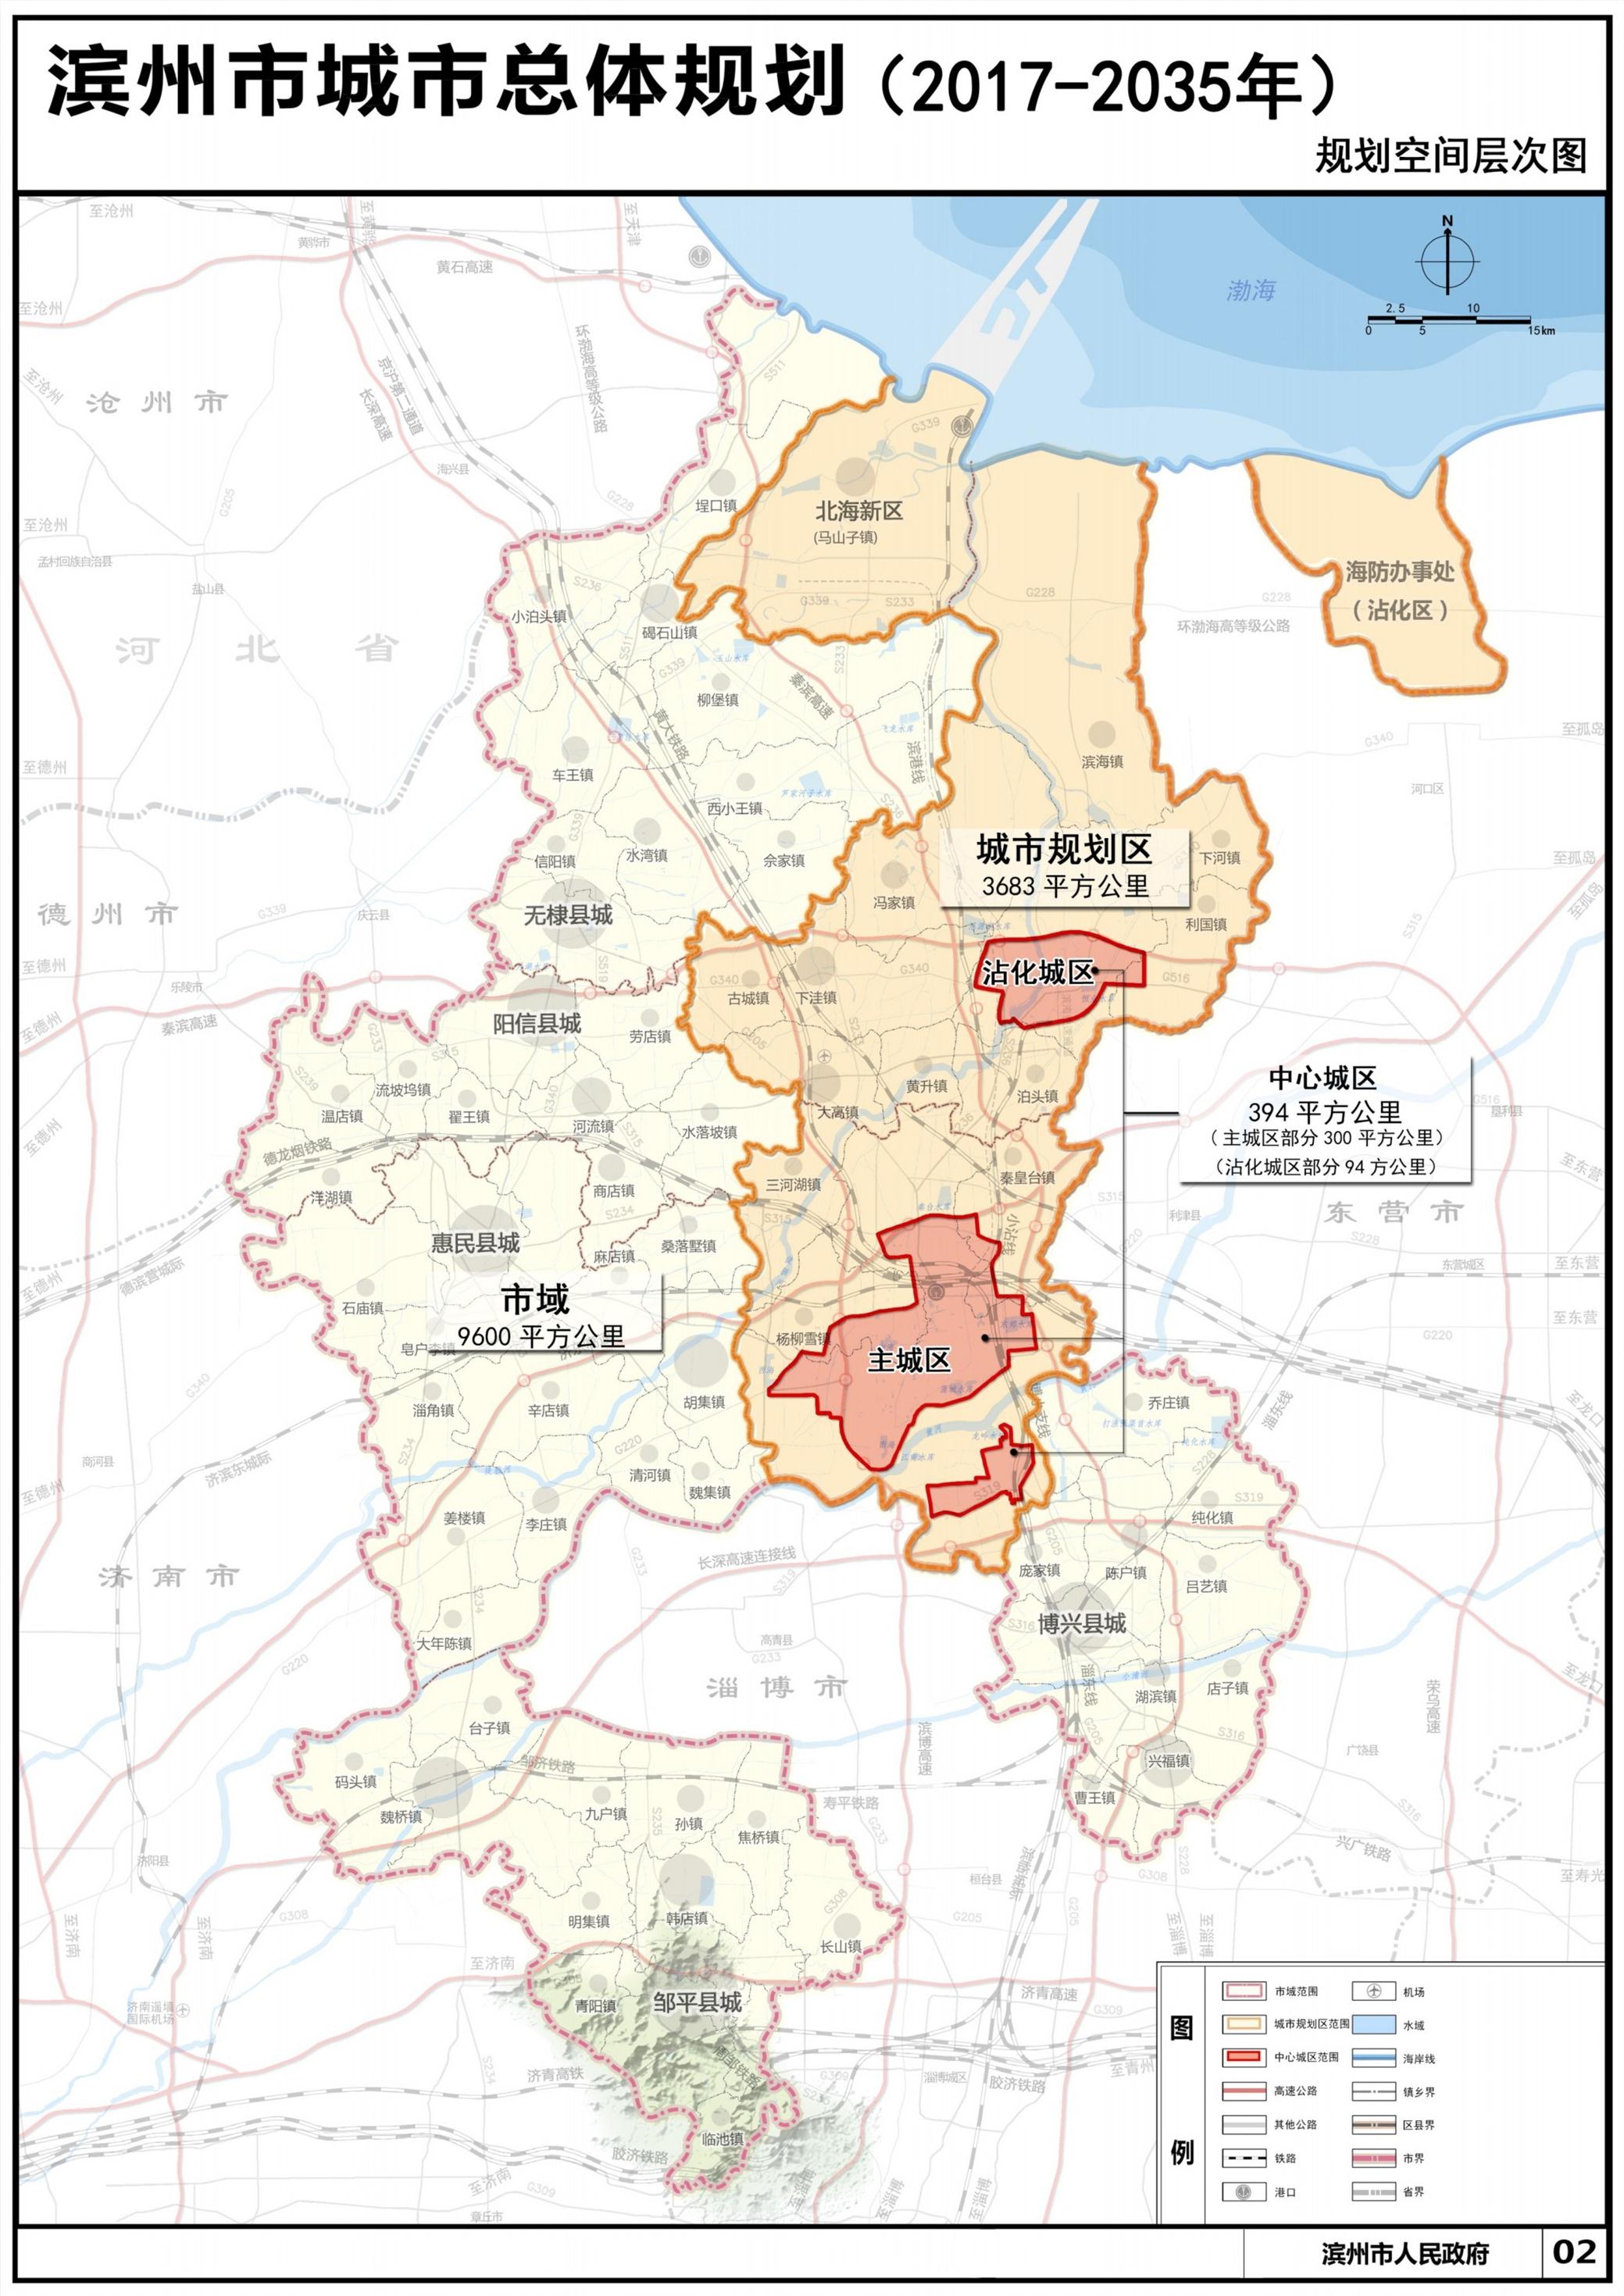 滨州市城市总体规划20172035年草案公示和意见征集